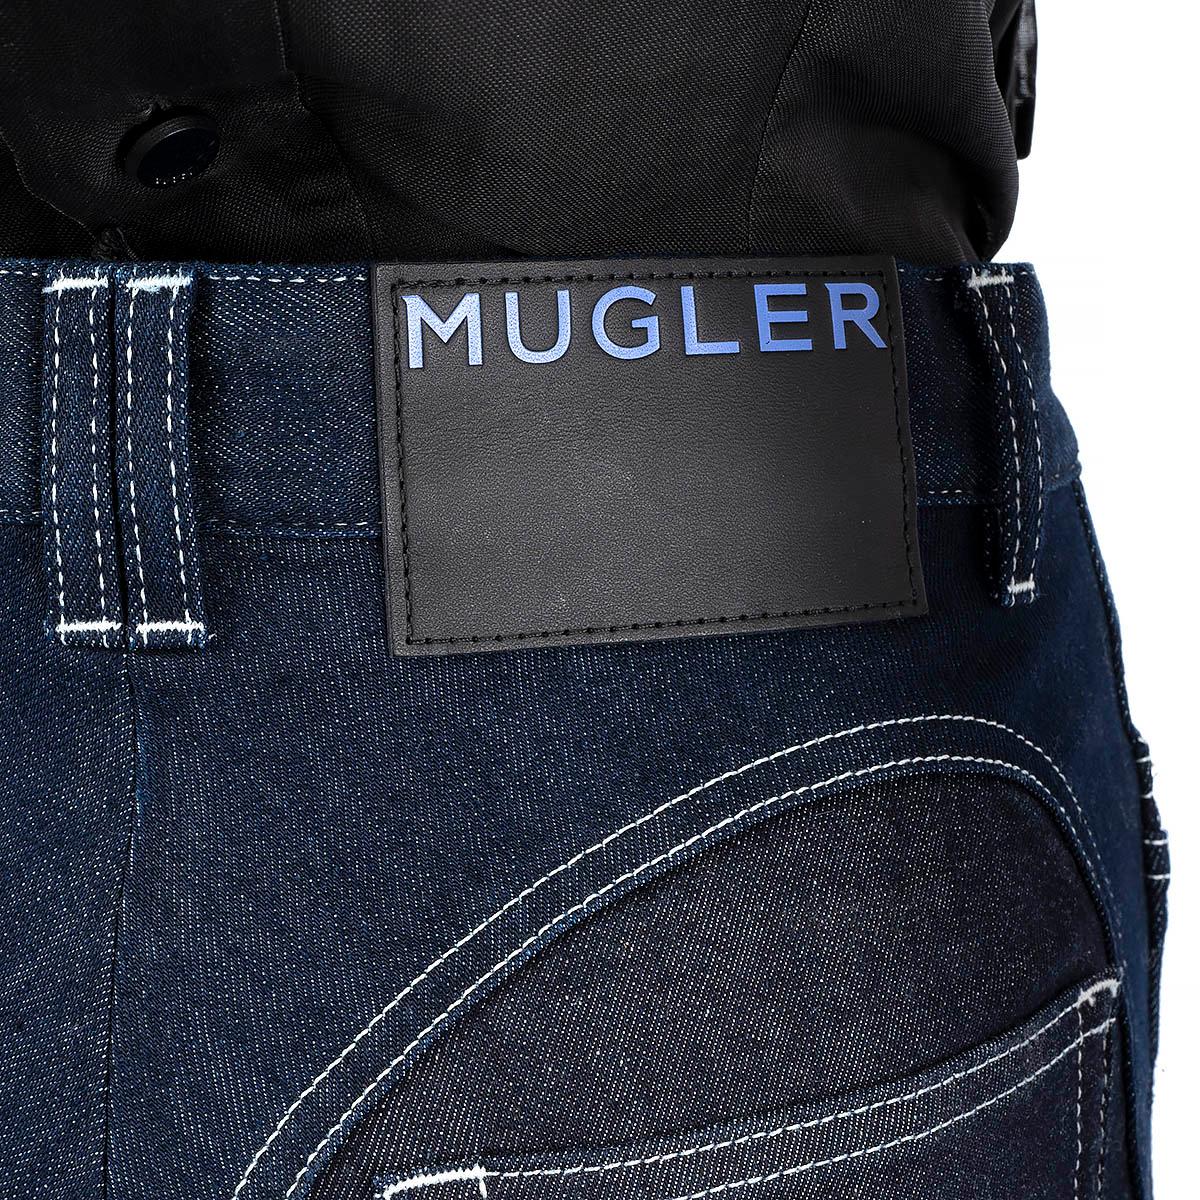 MUGLER Dunkelblaue Baumwoll-Jeans SPIRAL HIGH WAISTED HOT PANTS Shorts 36 XS 3